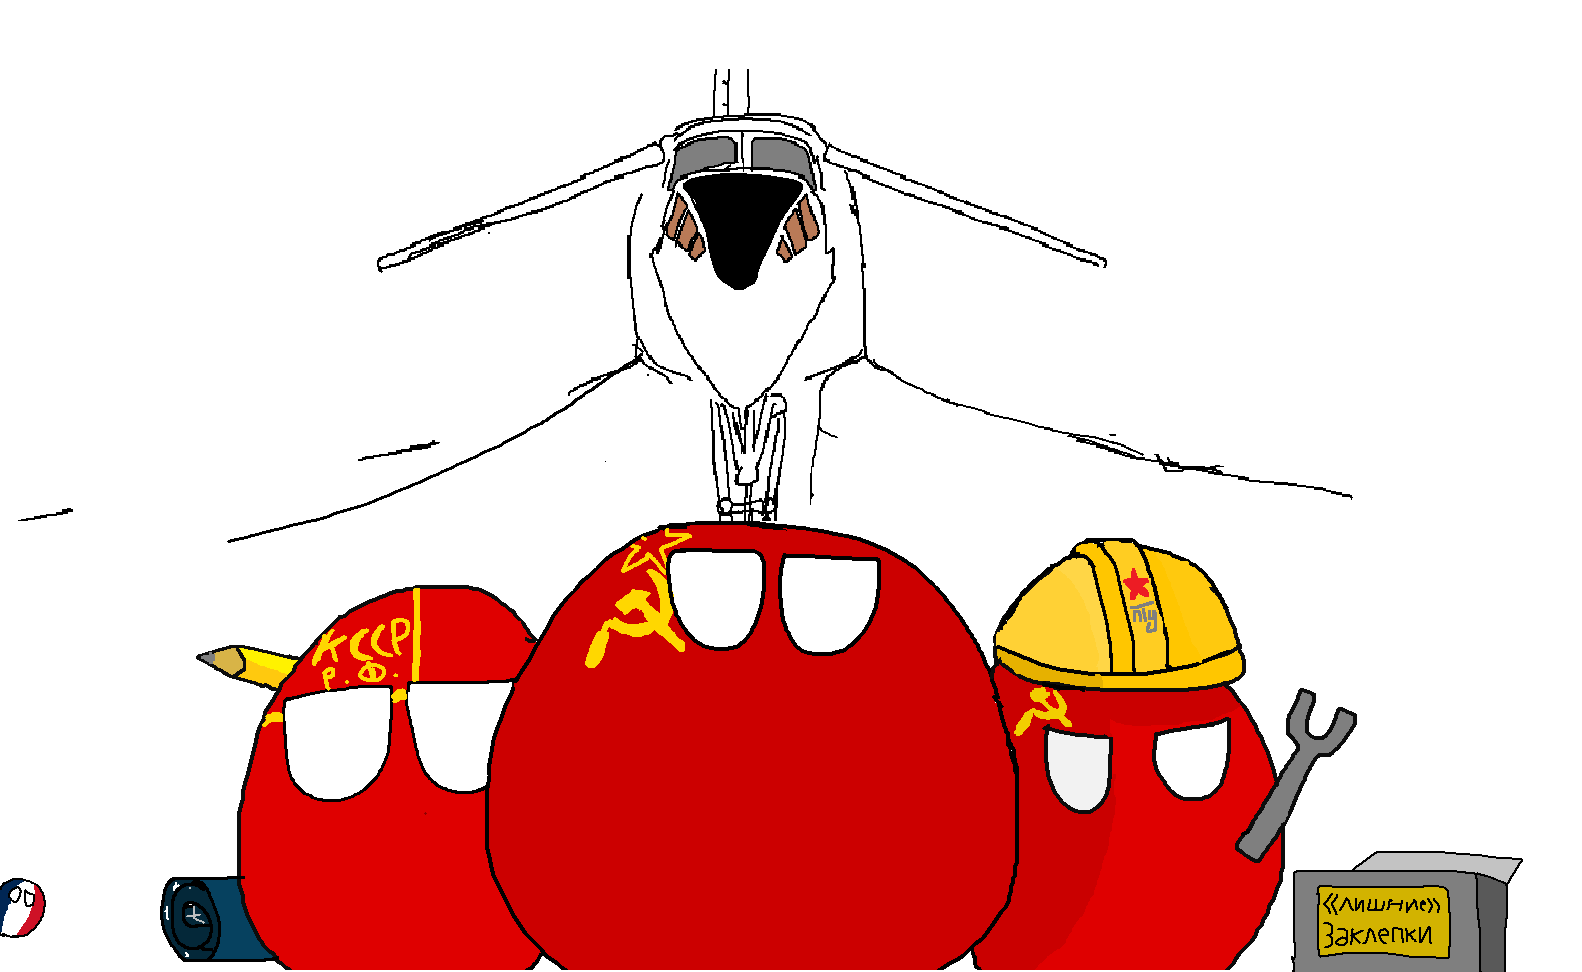 Sovietplanes.png